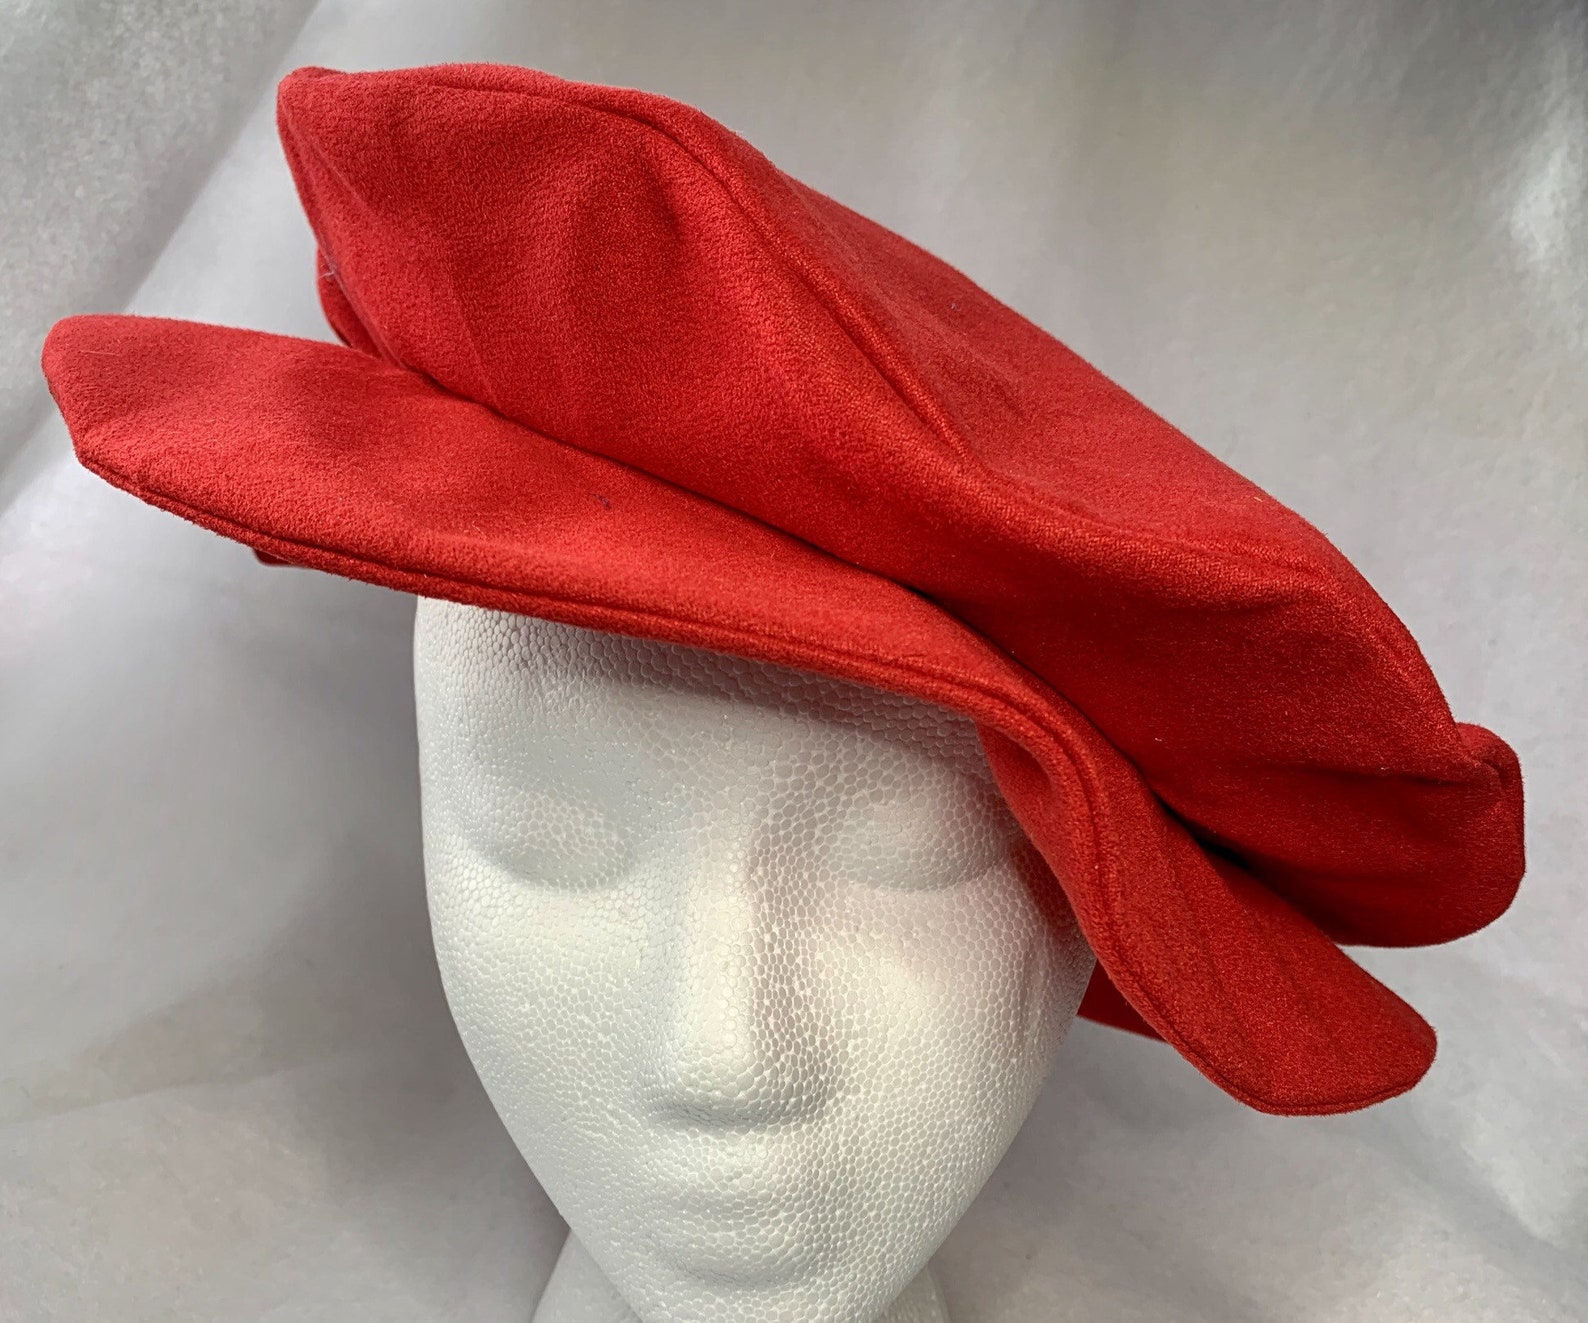 Soft Red Suedecloth Renaissance Hat Tudor Flat Cap | Etsy